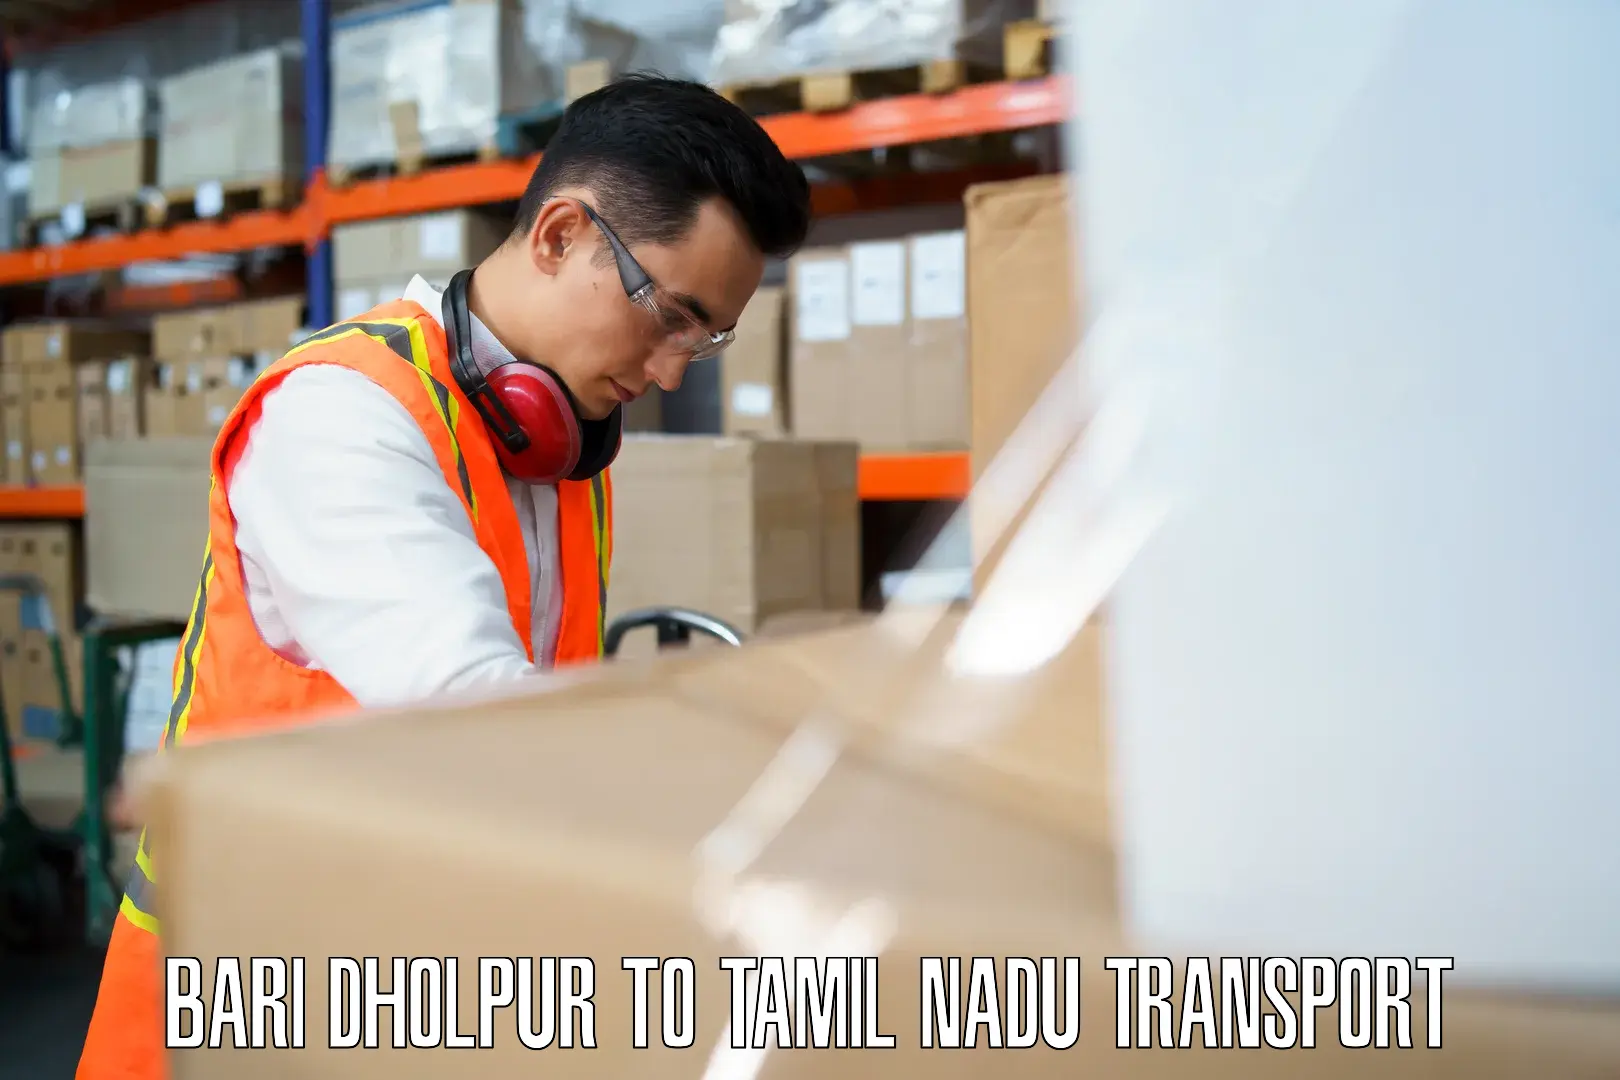 Part load transport service in India Bari Dholpur to Manamelkudi